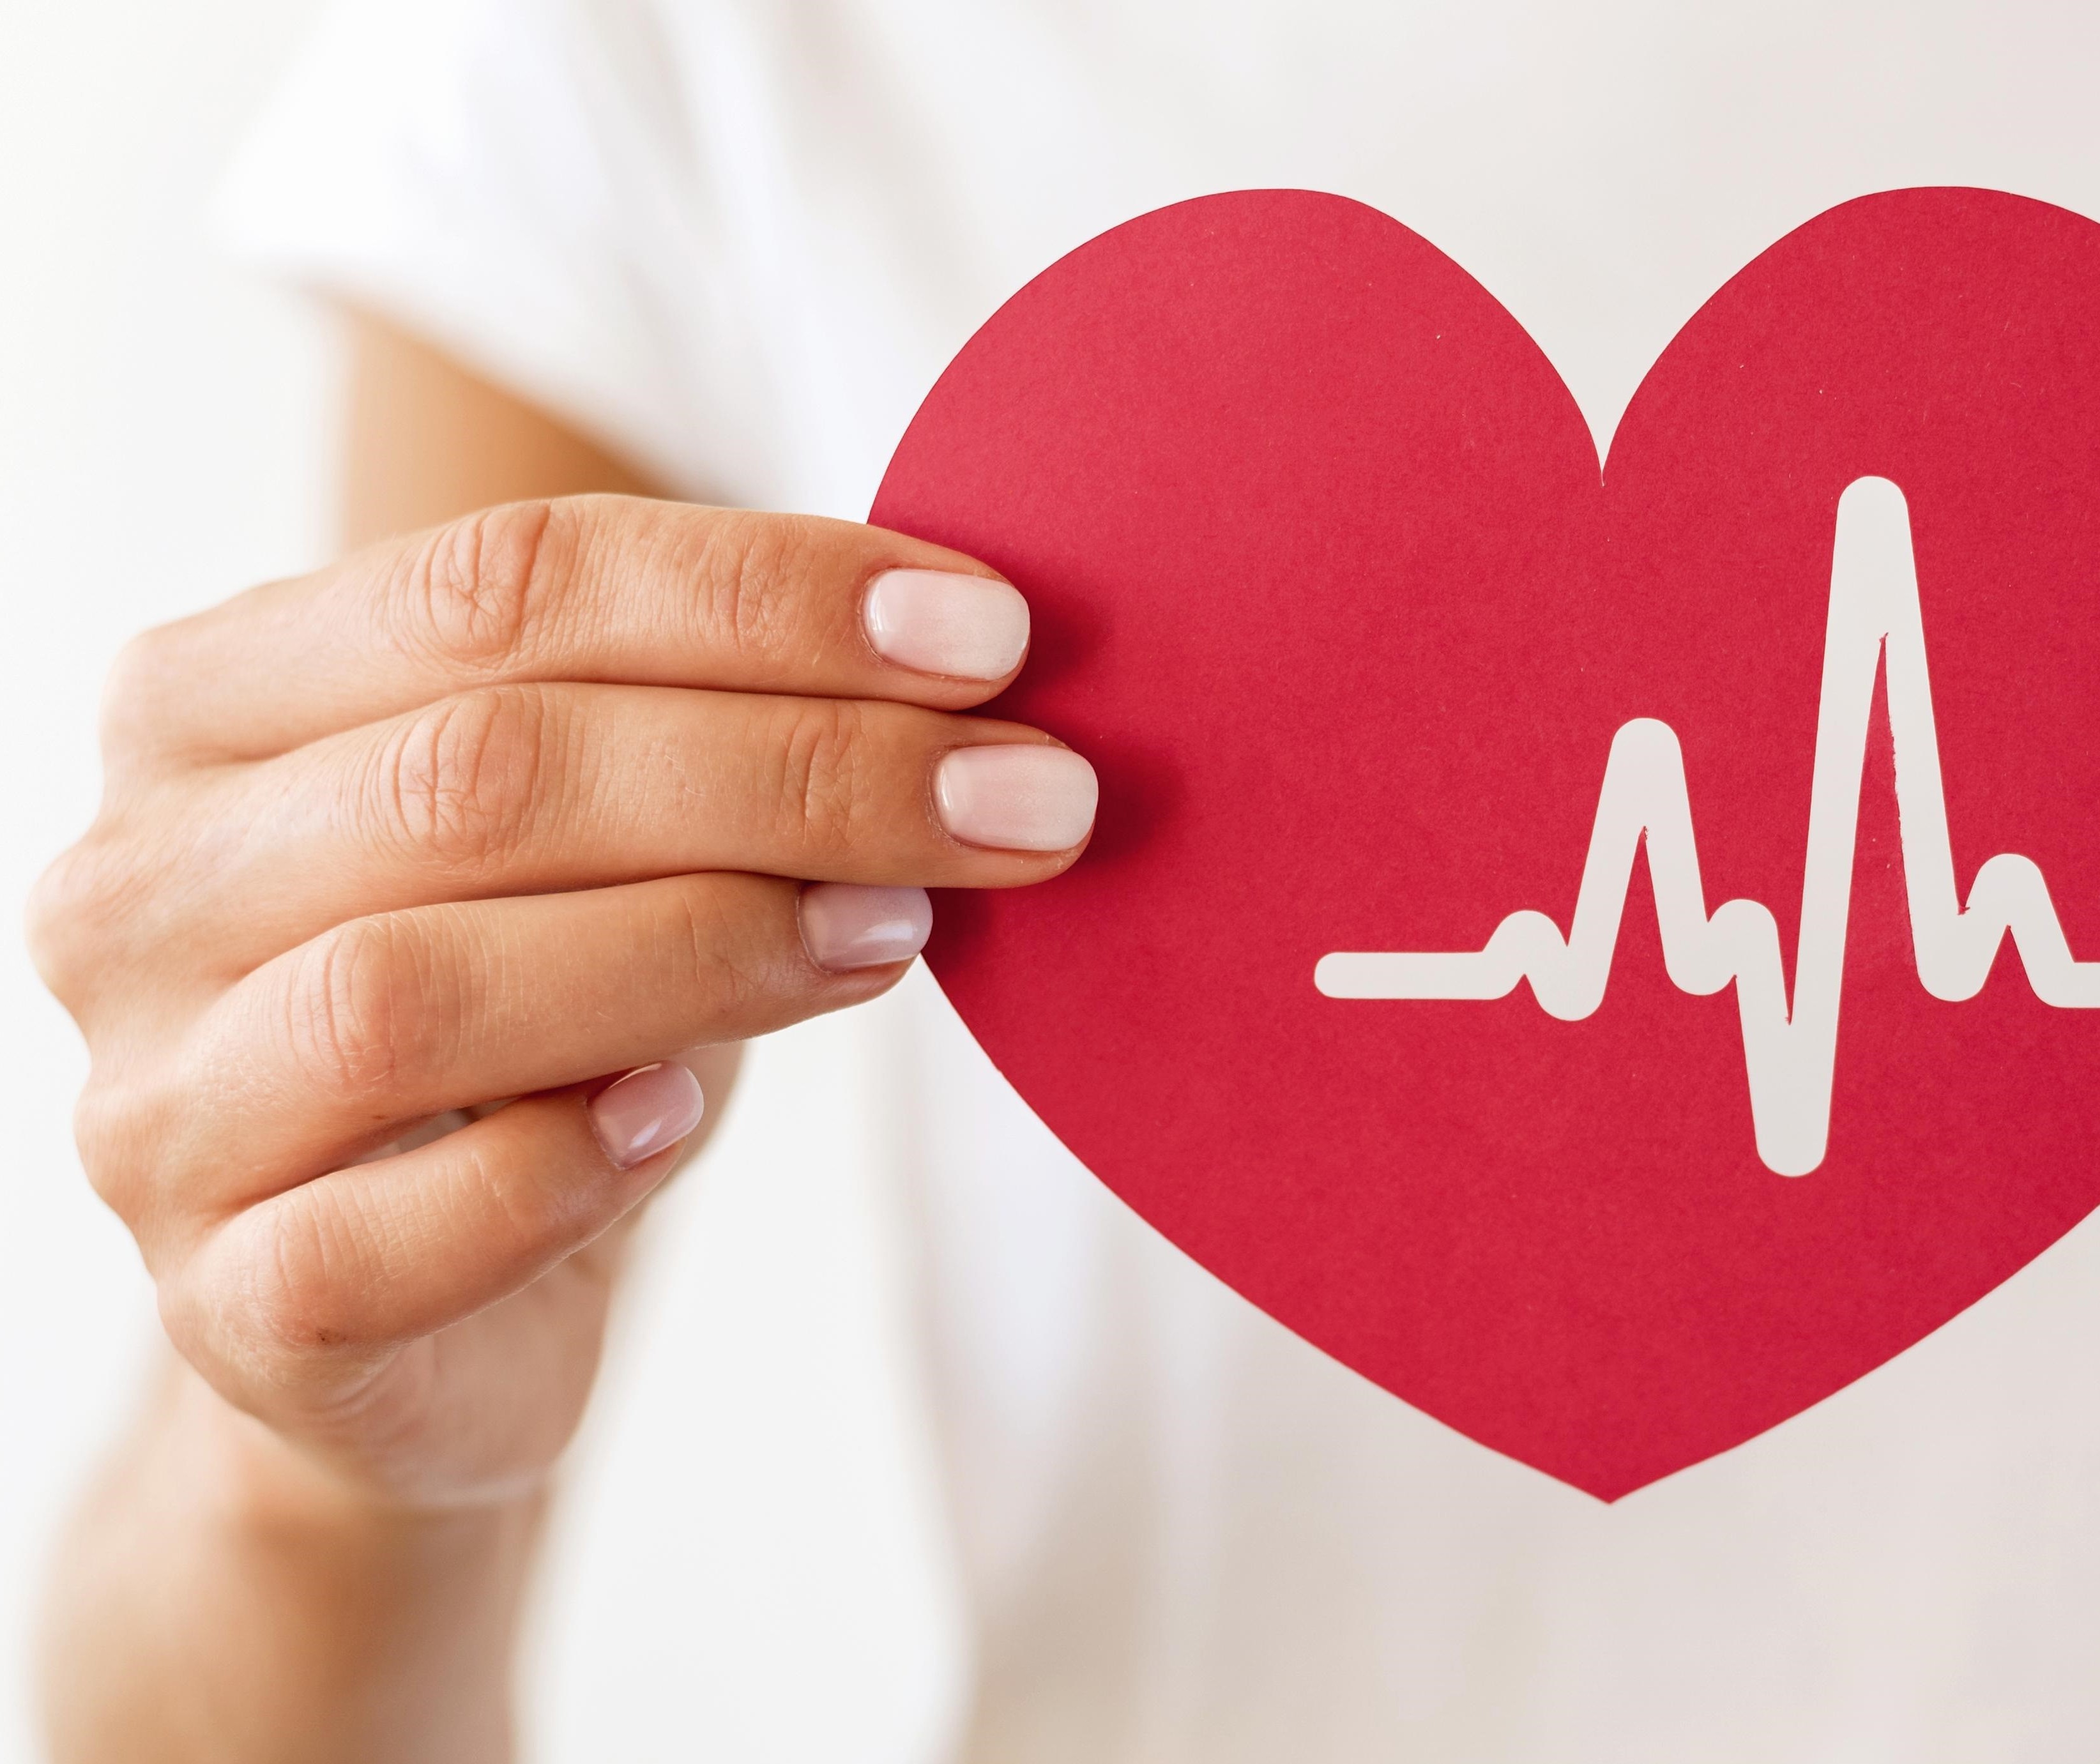 Arritmias cardíacas e morte súbita têm prevenção